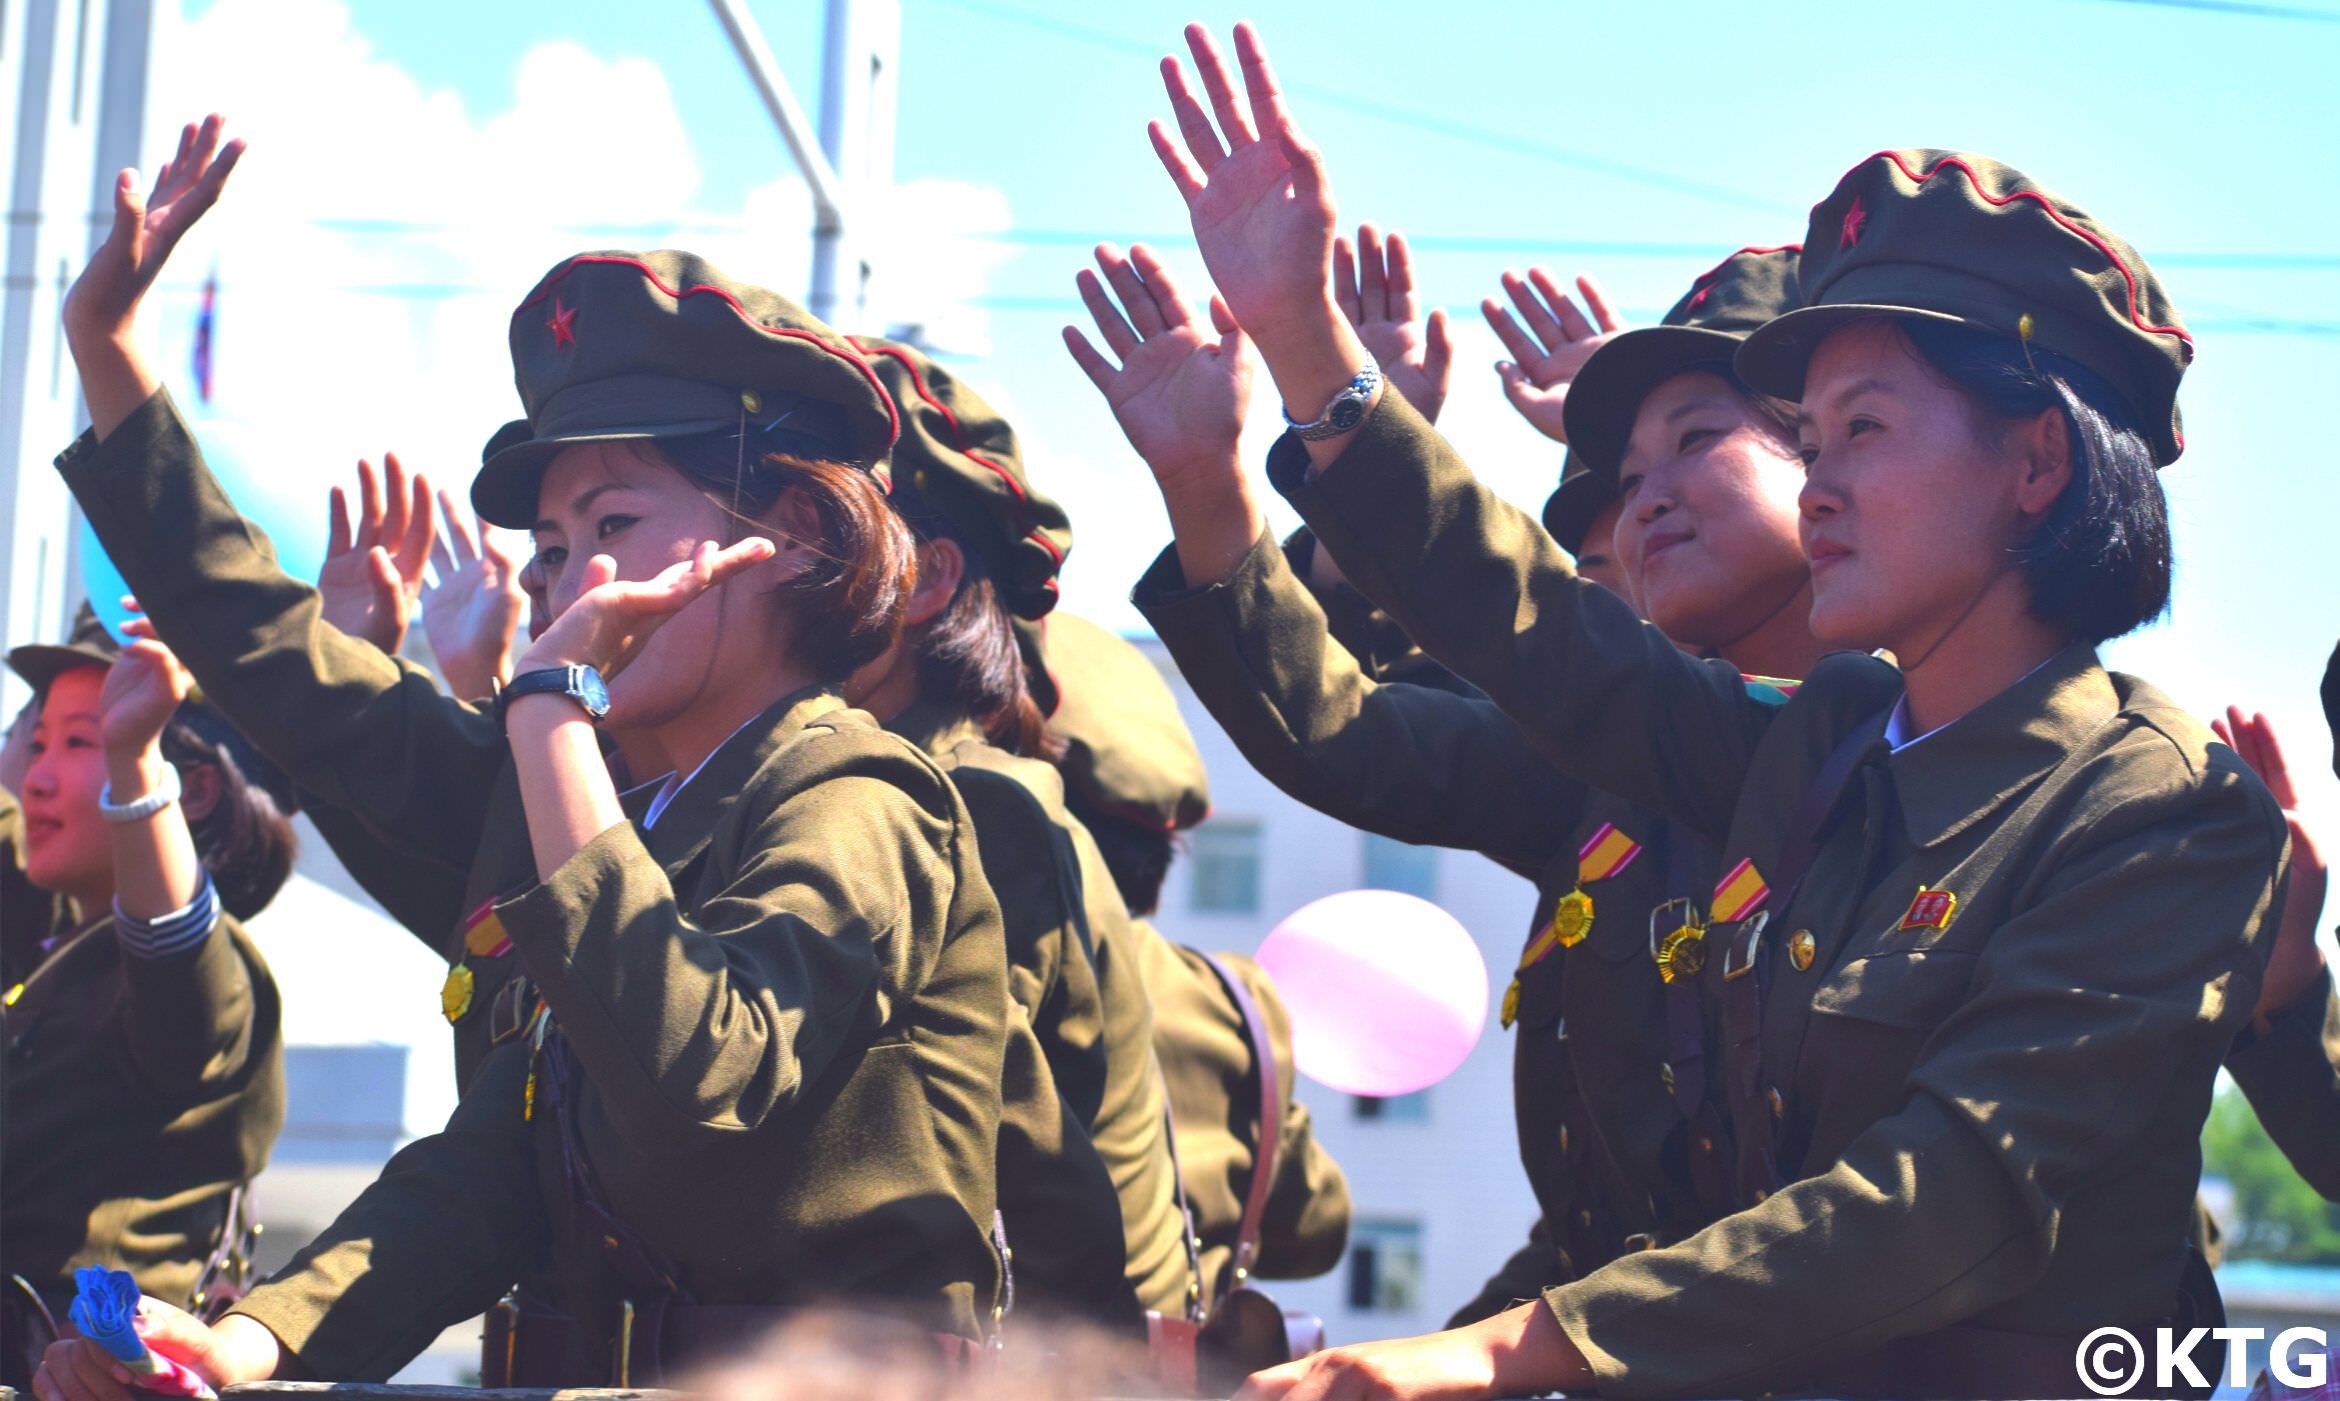 Soldadas norcoreanas en un desfile militar en Corea del Norte. El desfile tuvo lugar el Día Nacional de Corea del Norte, 9 Septiembre 2018